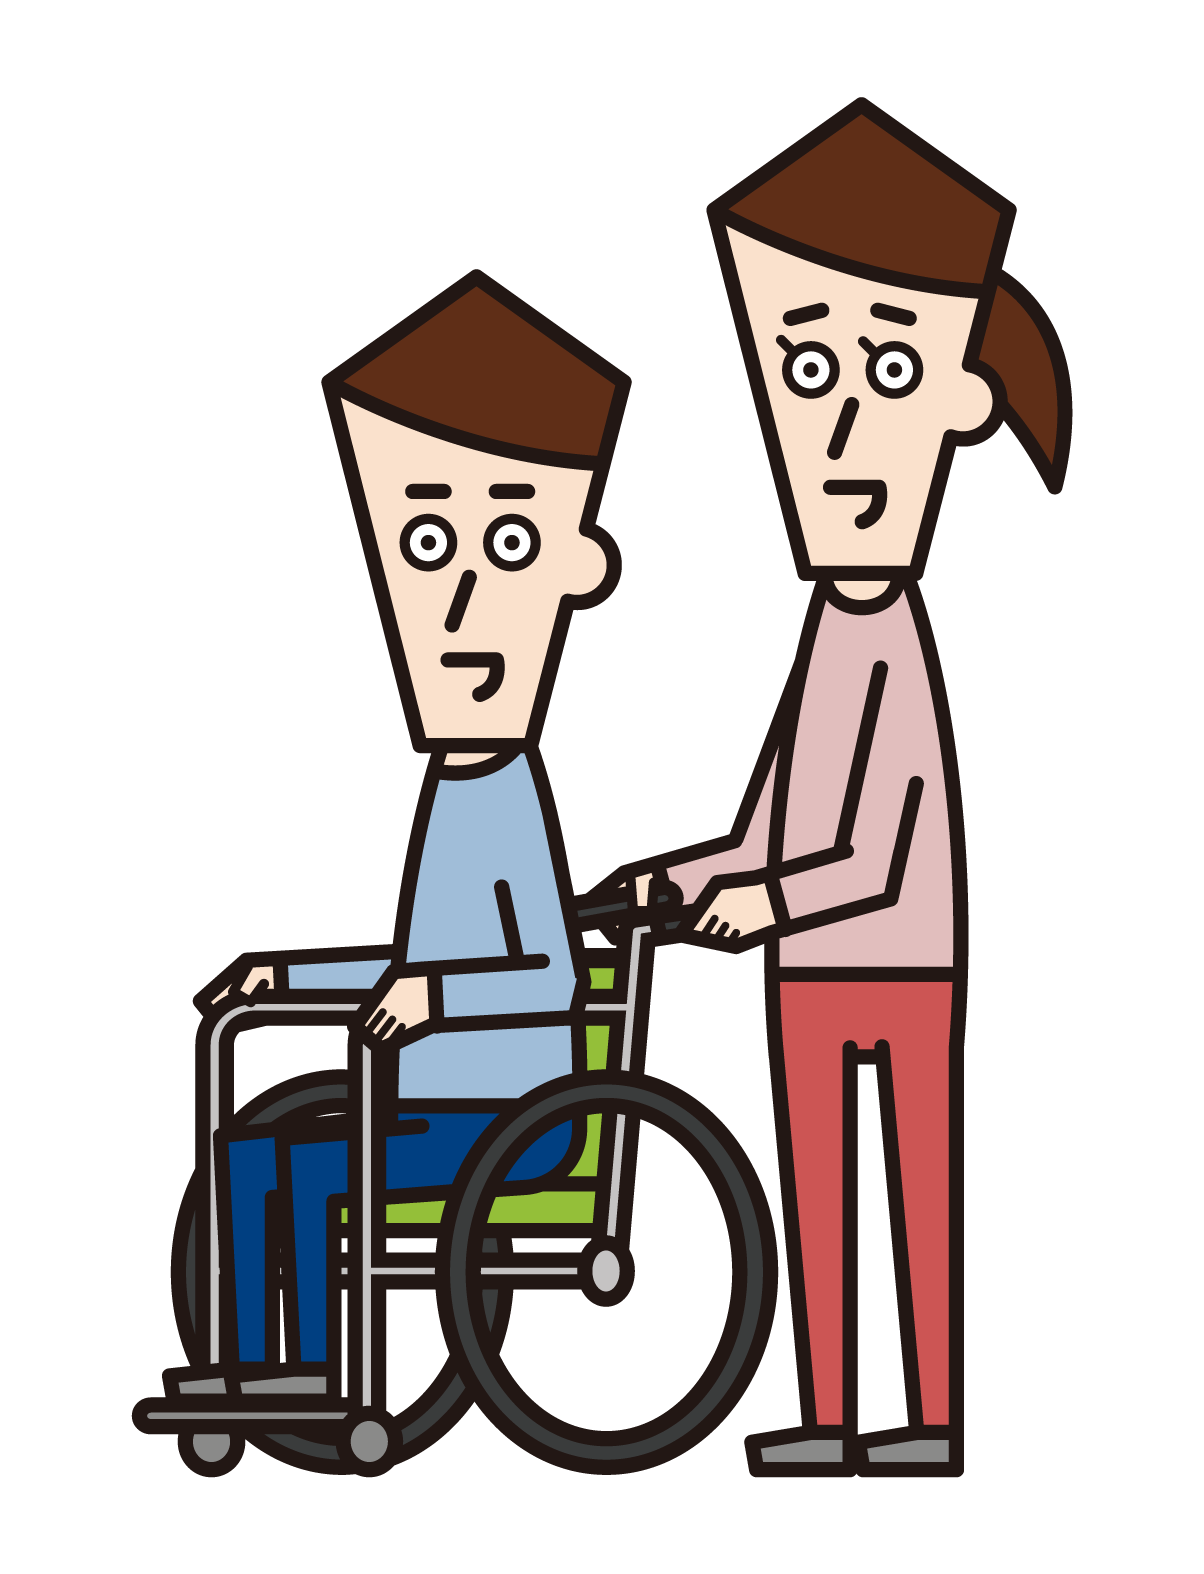 휠체어를 탄 사람(남성)과 휠체어를 밀고 있는 사람(여성)의 그림